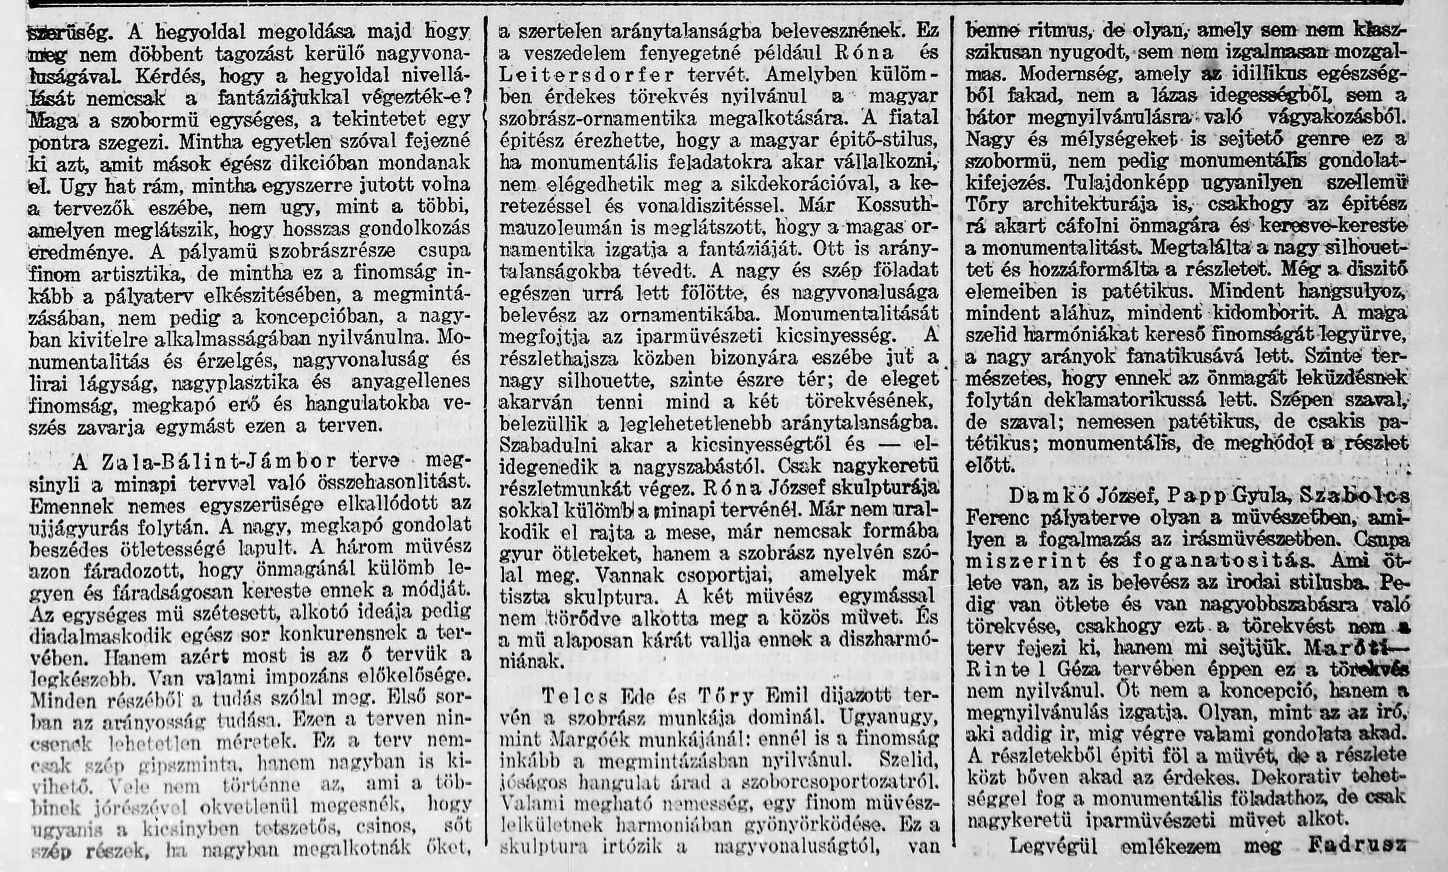 Pesti Napló, 1903. VI. 17. 3. p.